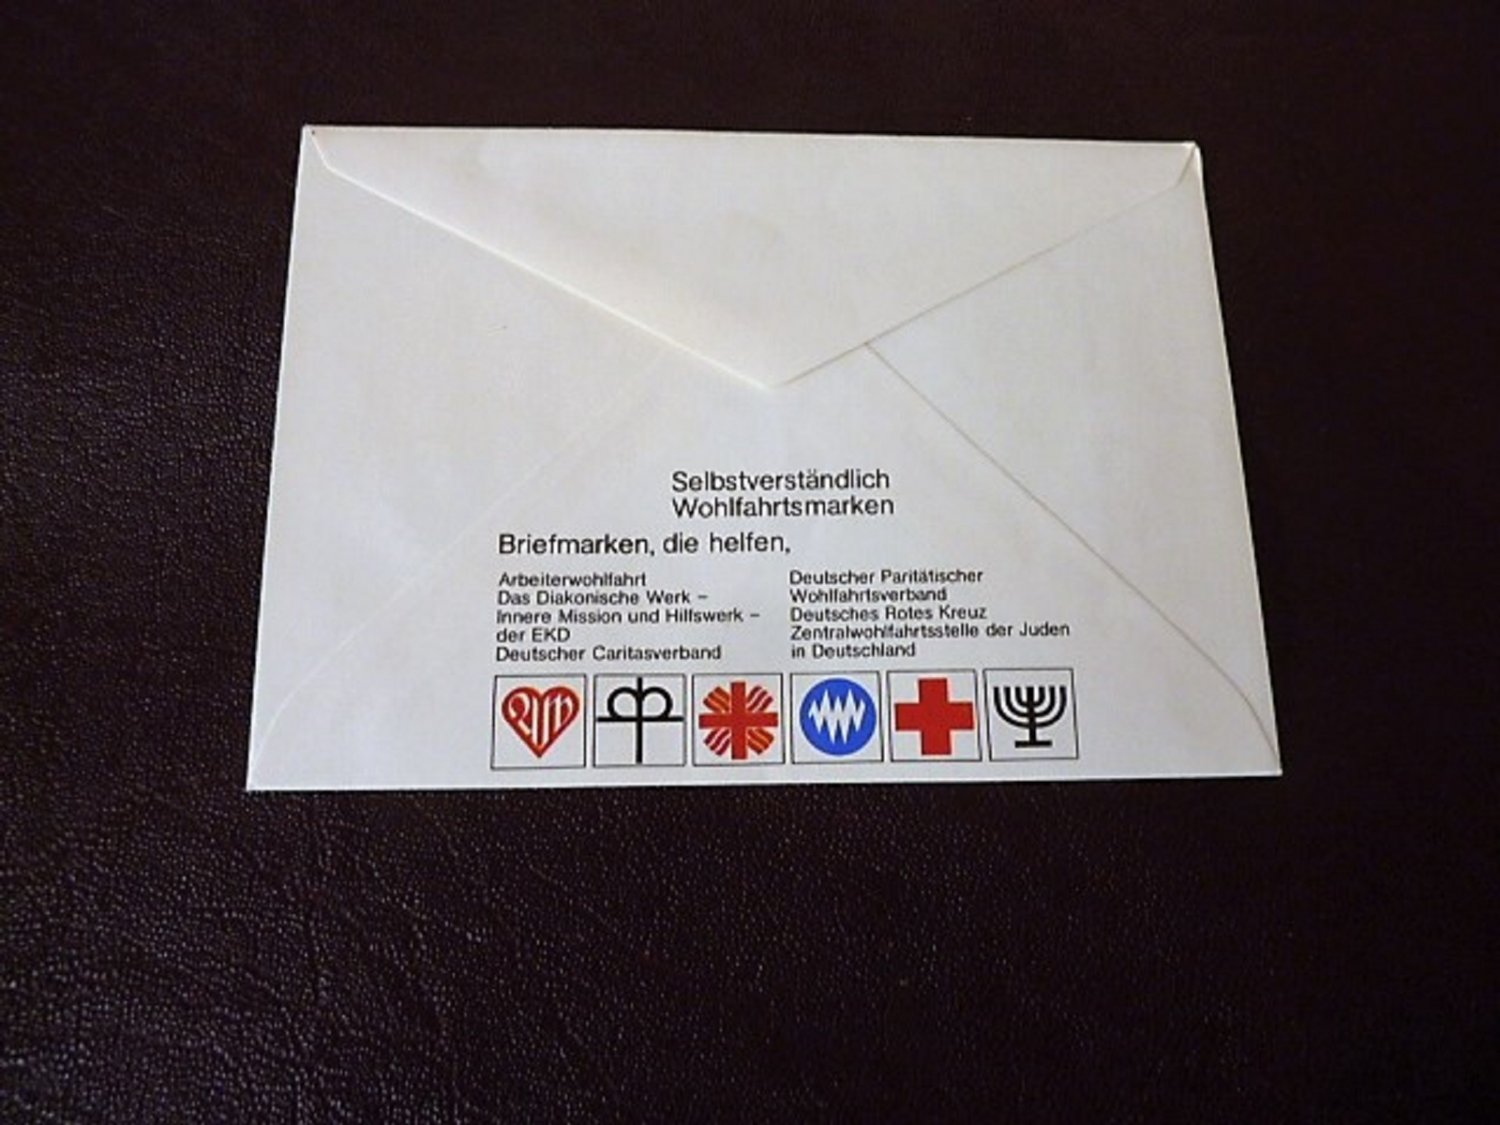 Deutsche Bundespost Berlin Offizieller Ersttagsbrief